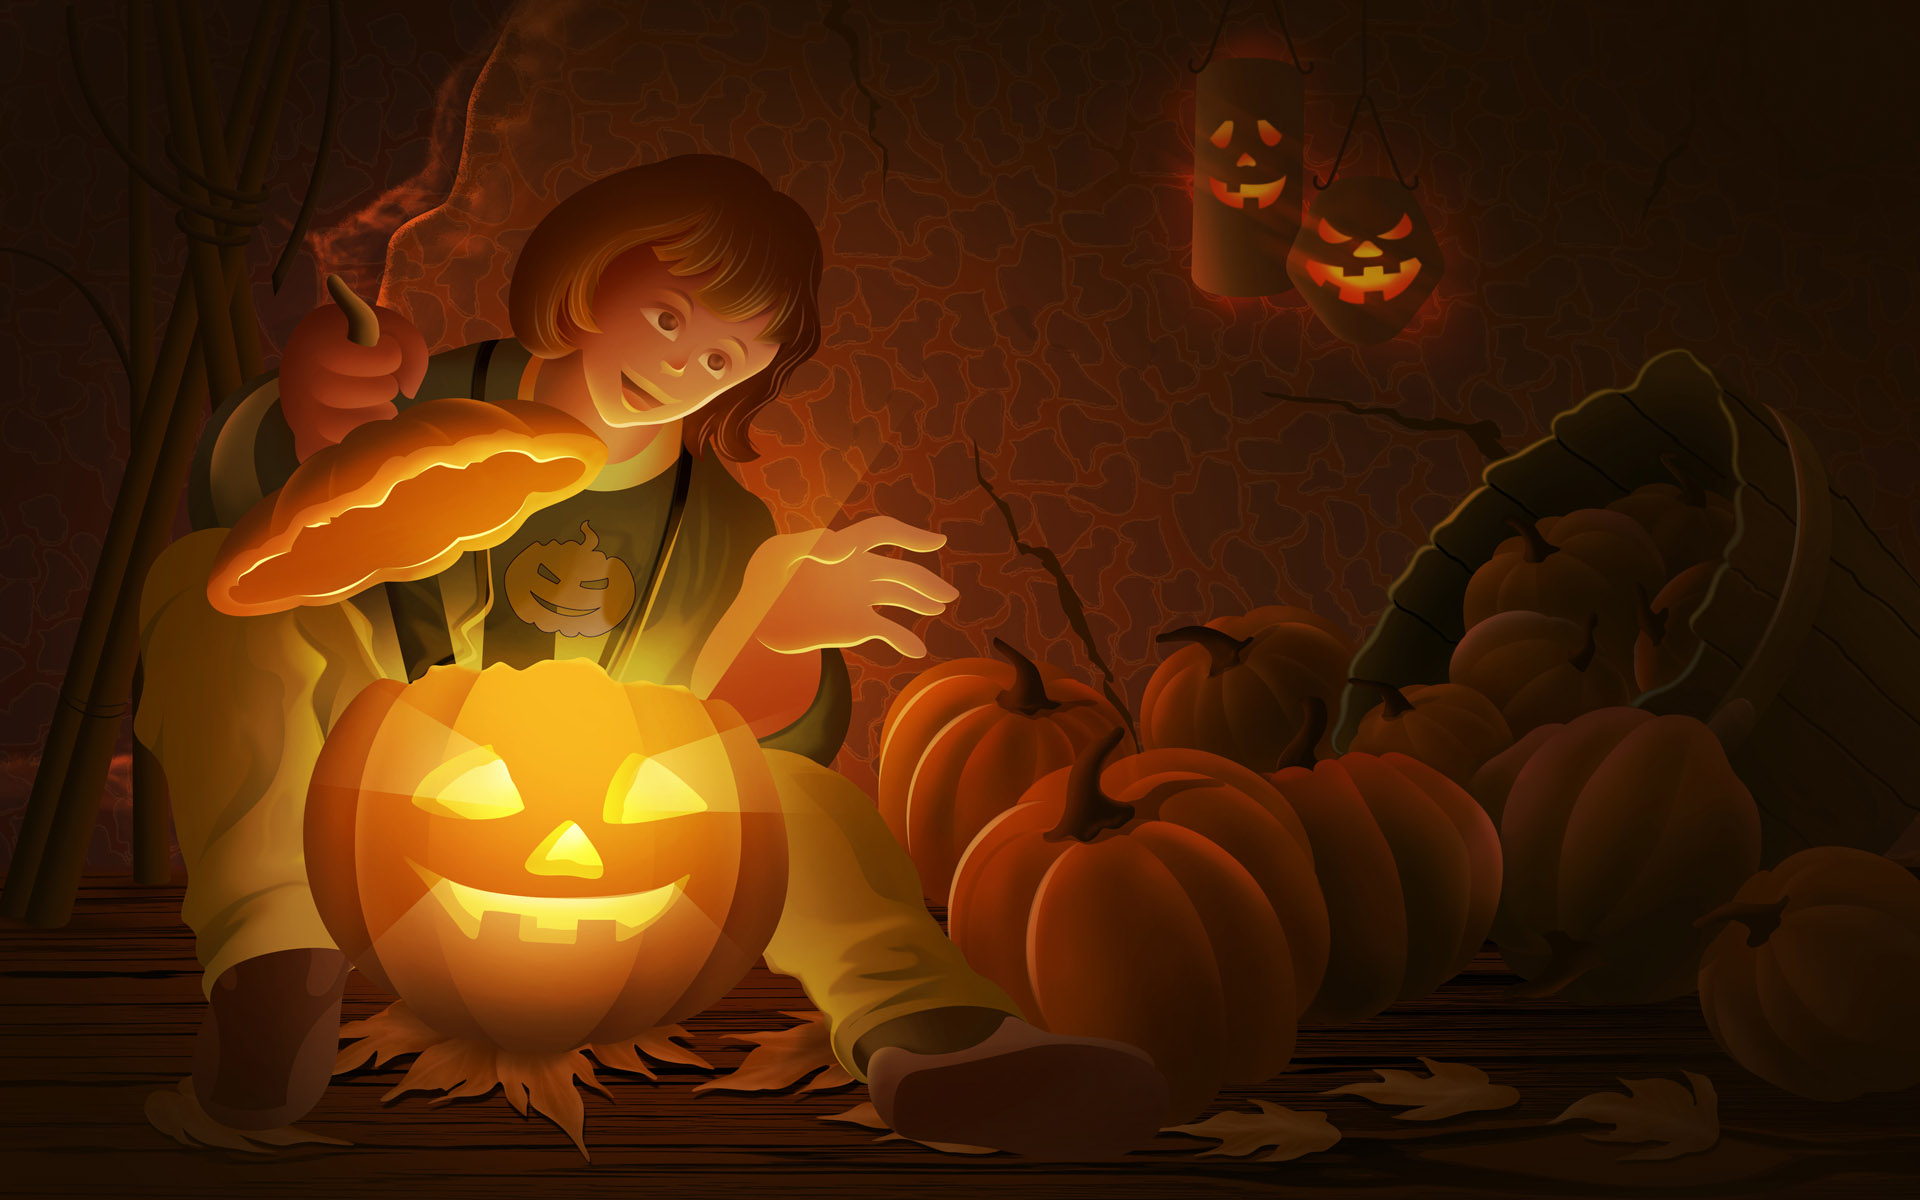 Halloween Pumpkin Wallpaper Image Amp Pictures Becuo